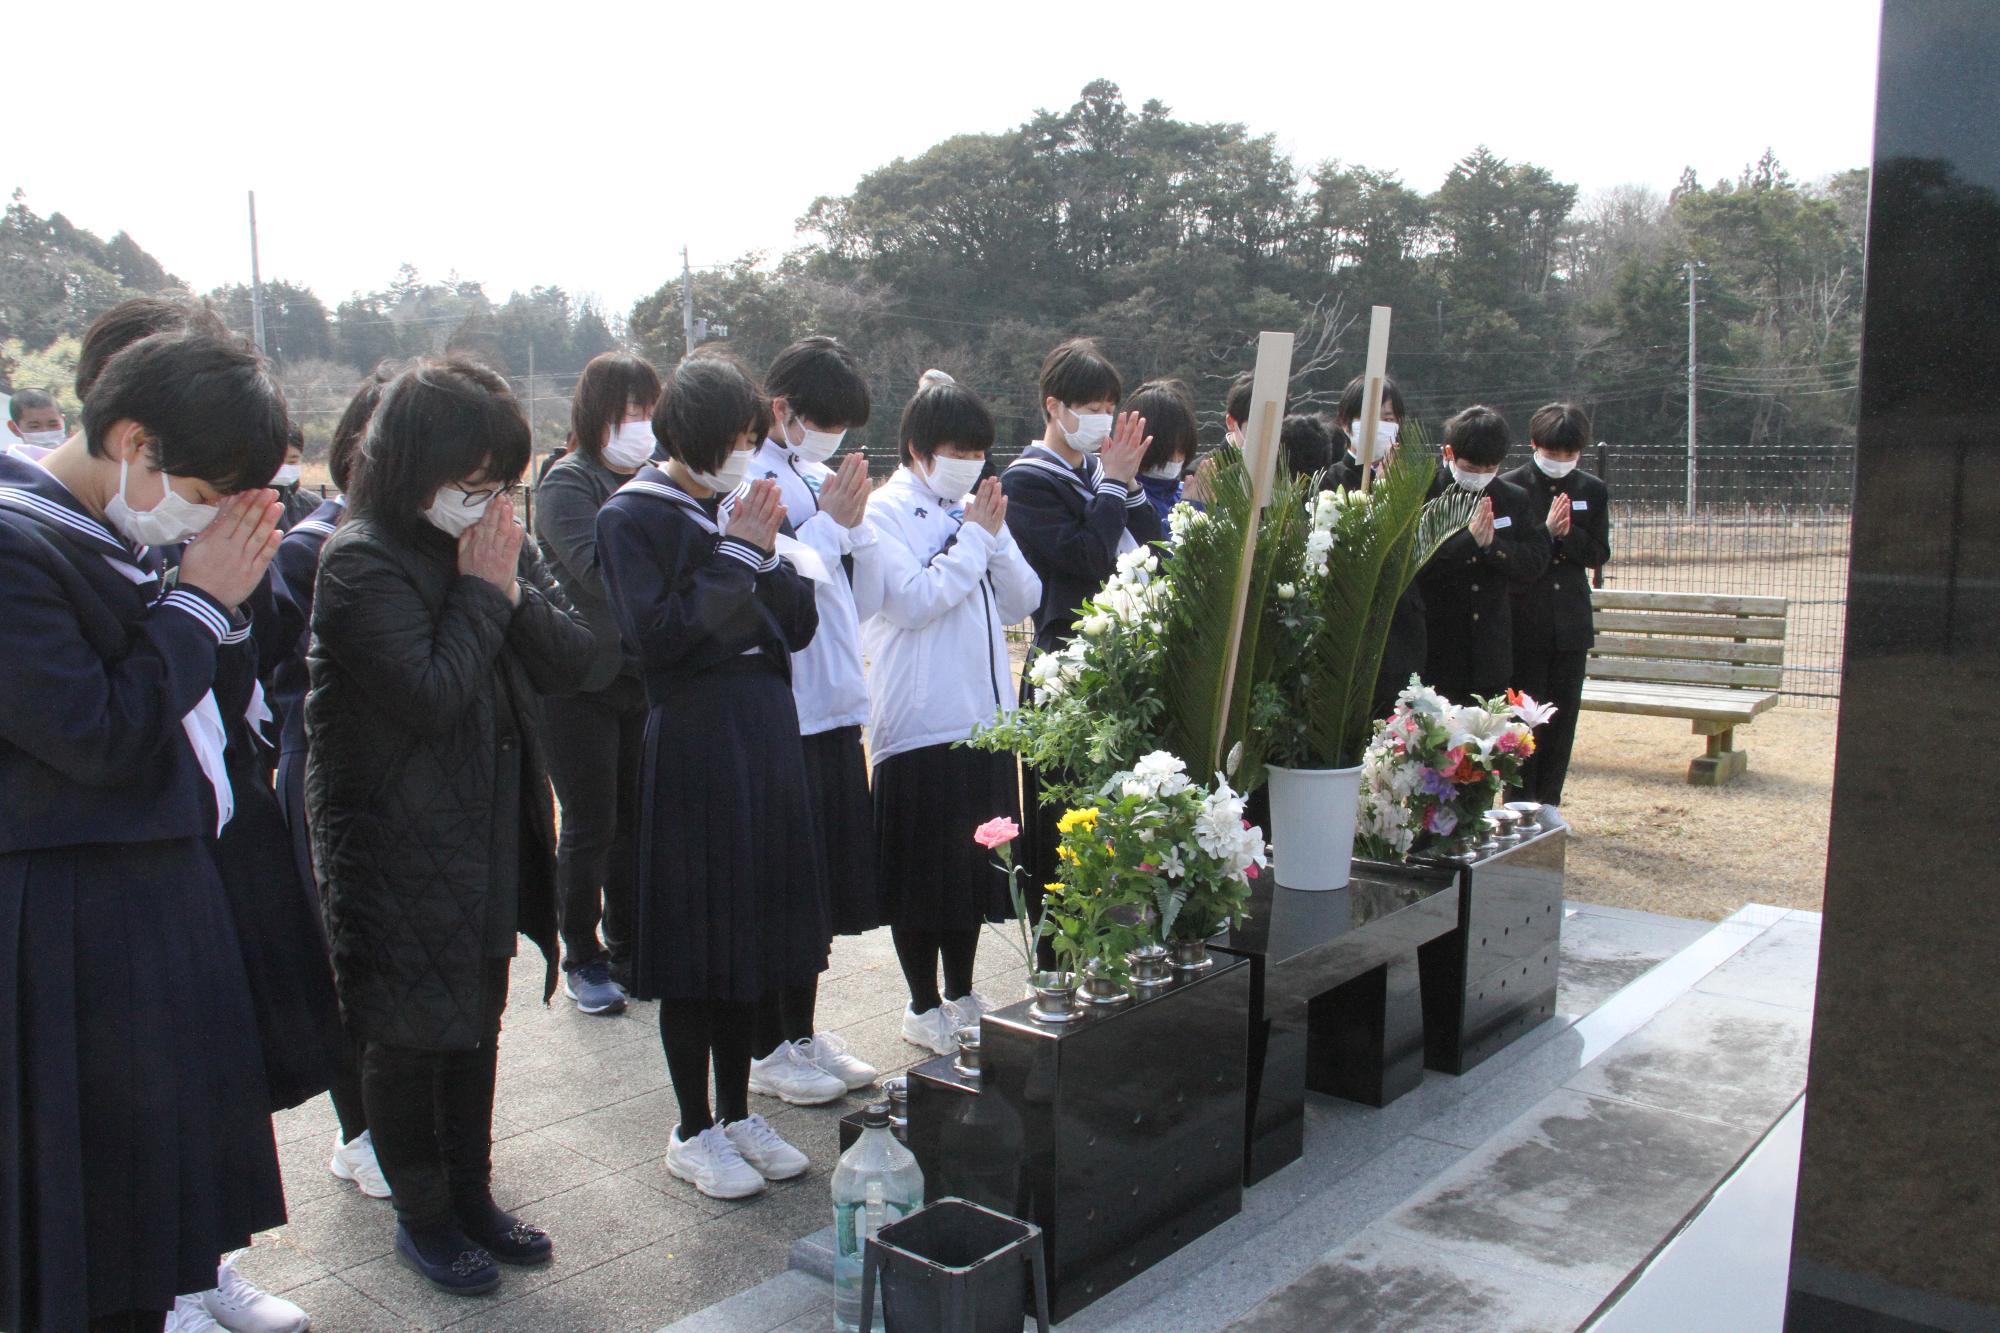 生徒らが震災の慰霊碑の前で手を合わせる様子